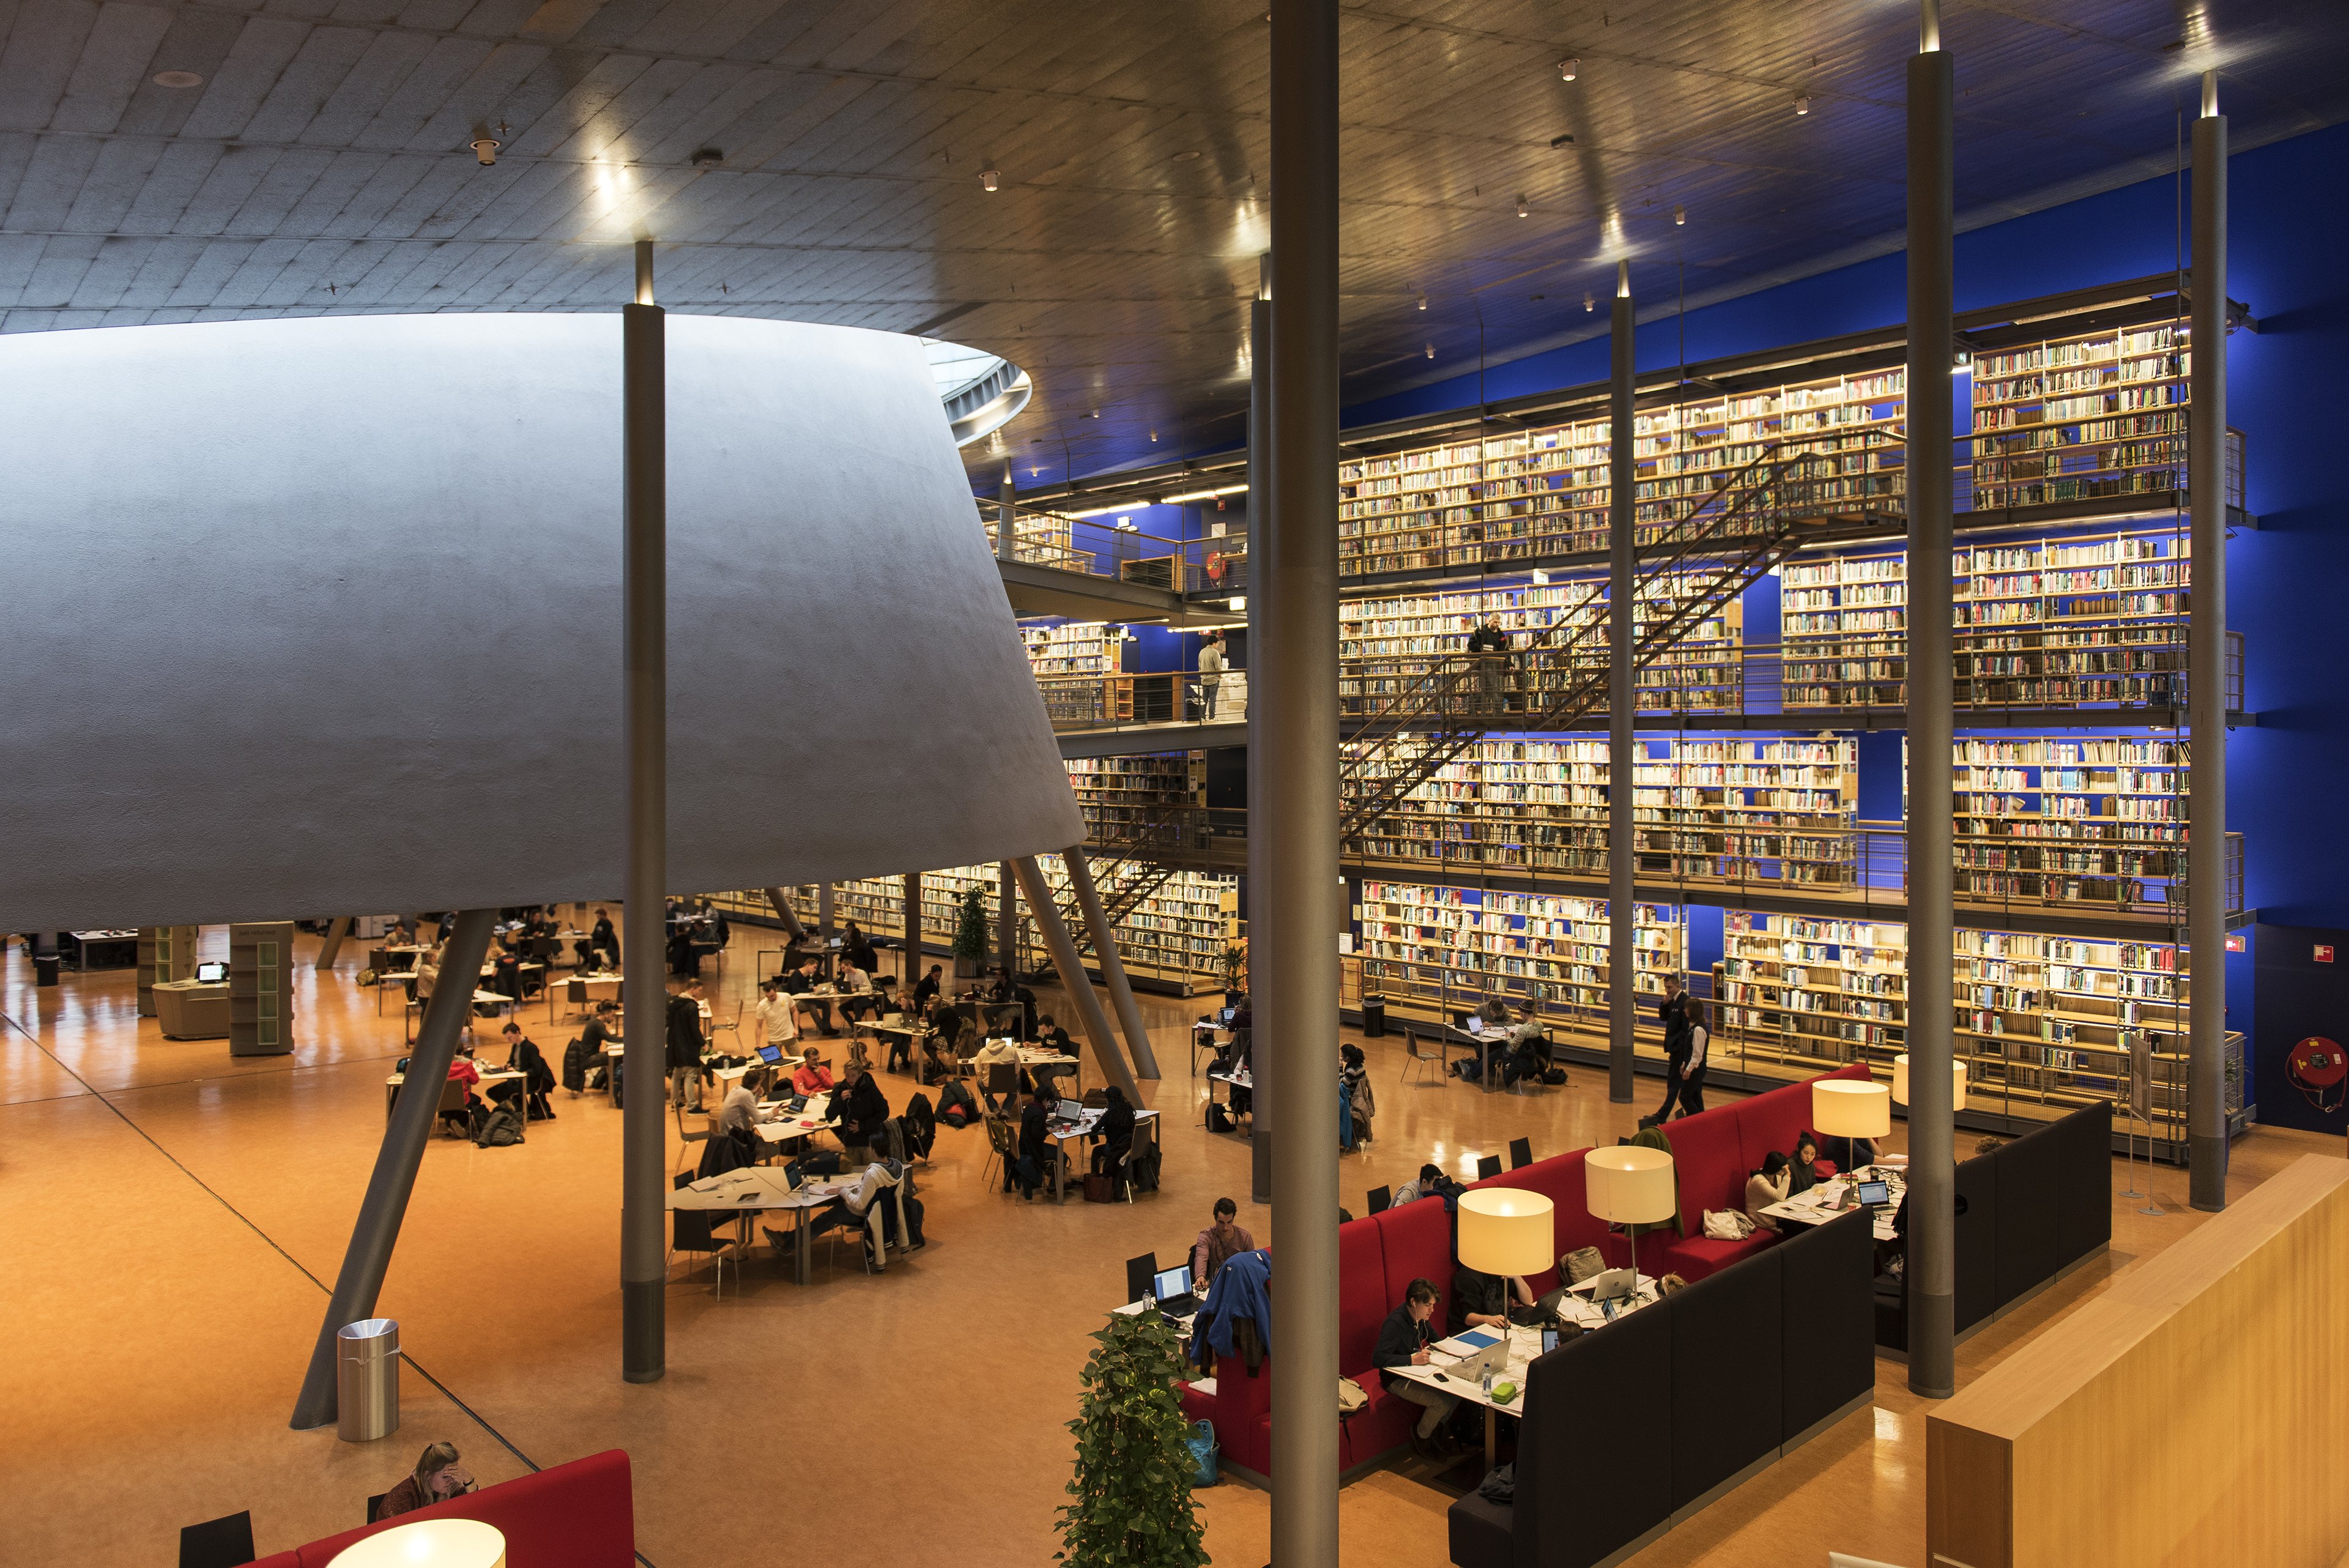 De universiteitsbibliotheek van de Technische Universiteit in Delft. (Foto: Jan Sluijter)